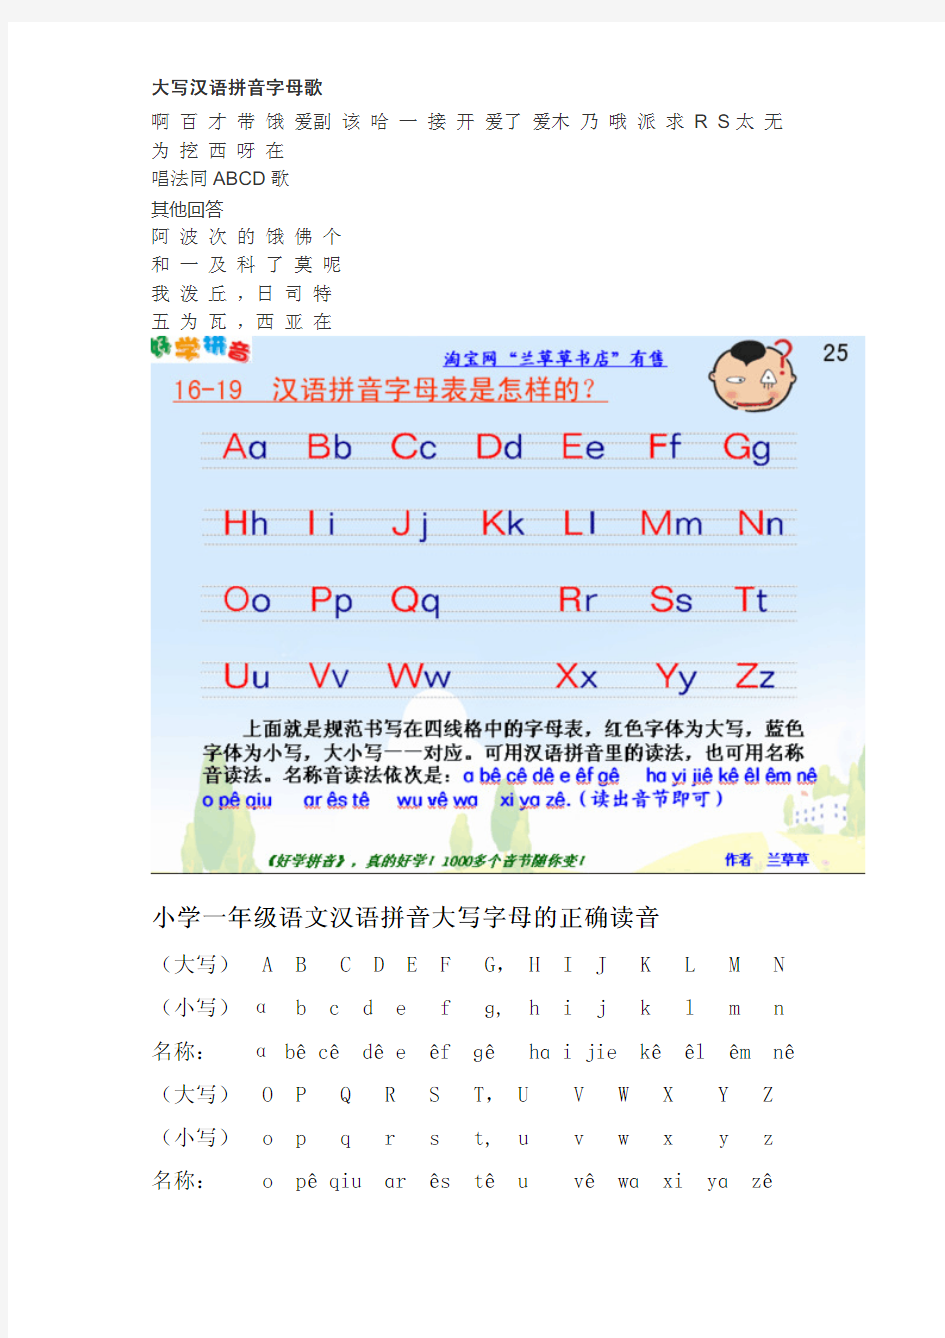 大写汉语拼音字母歌